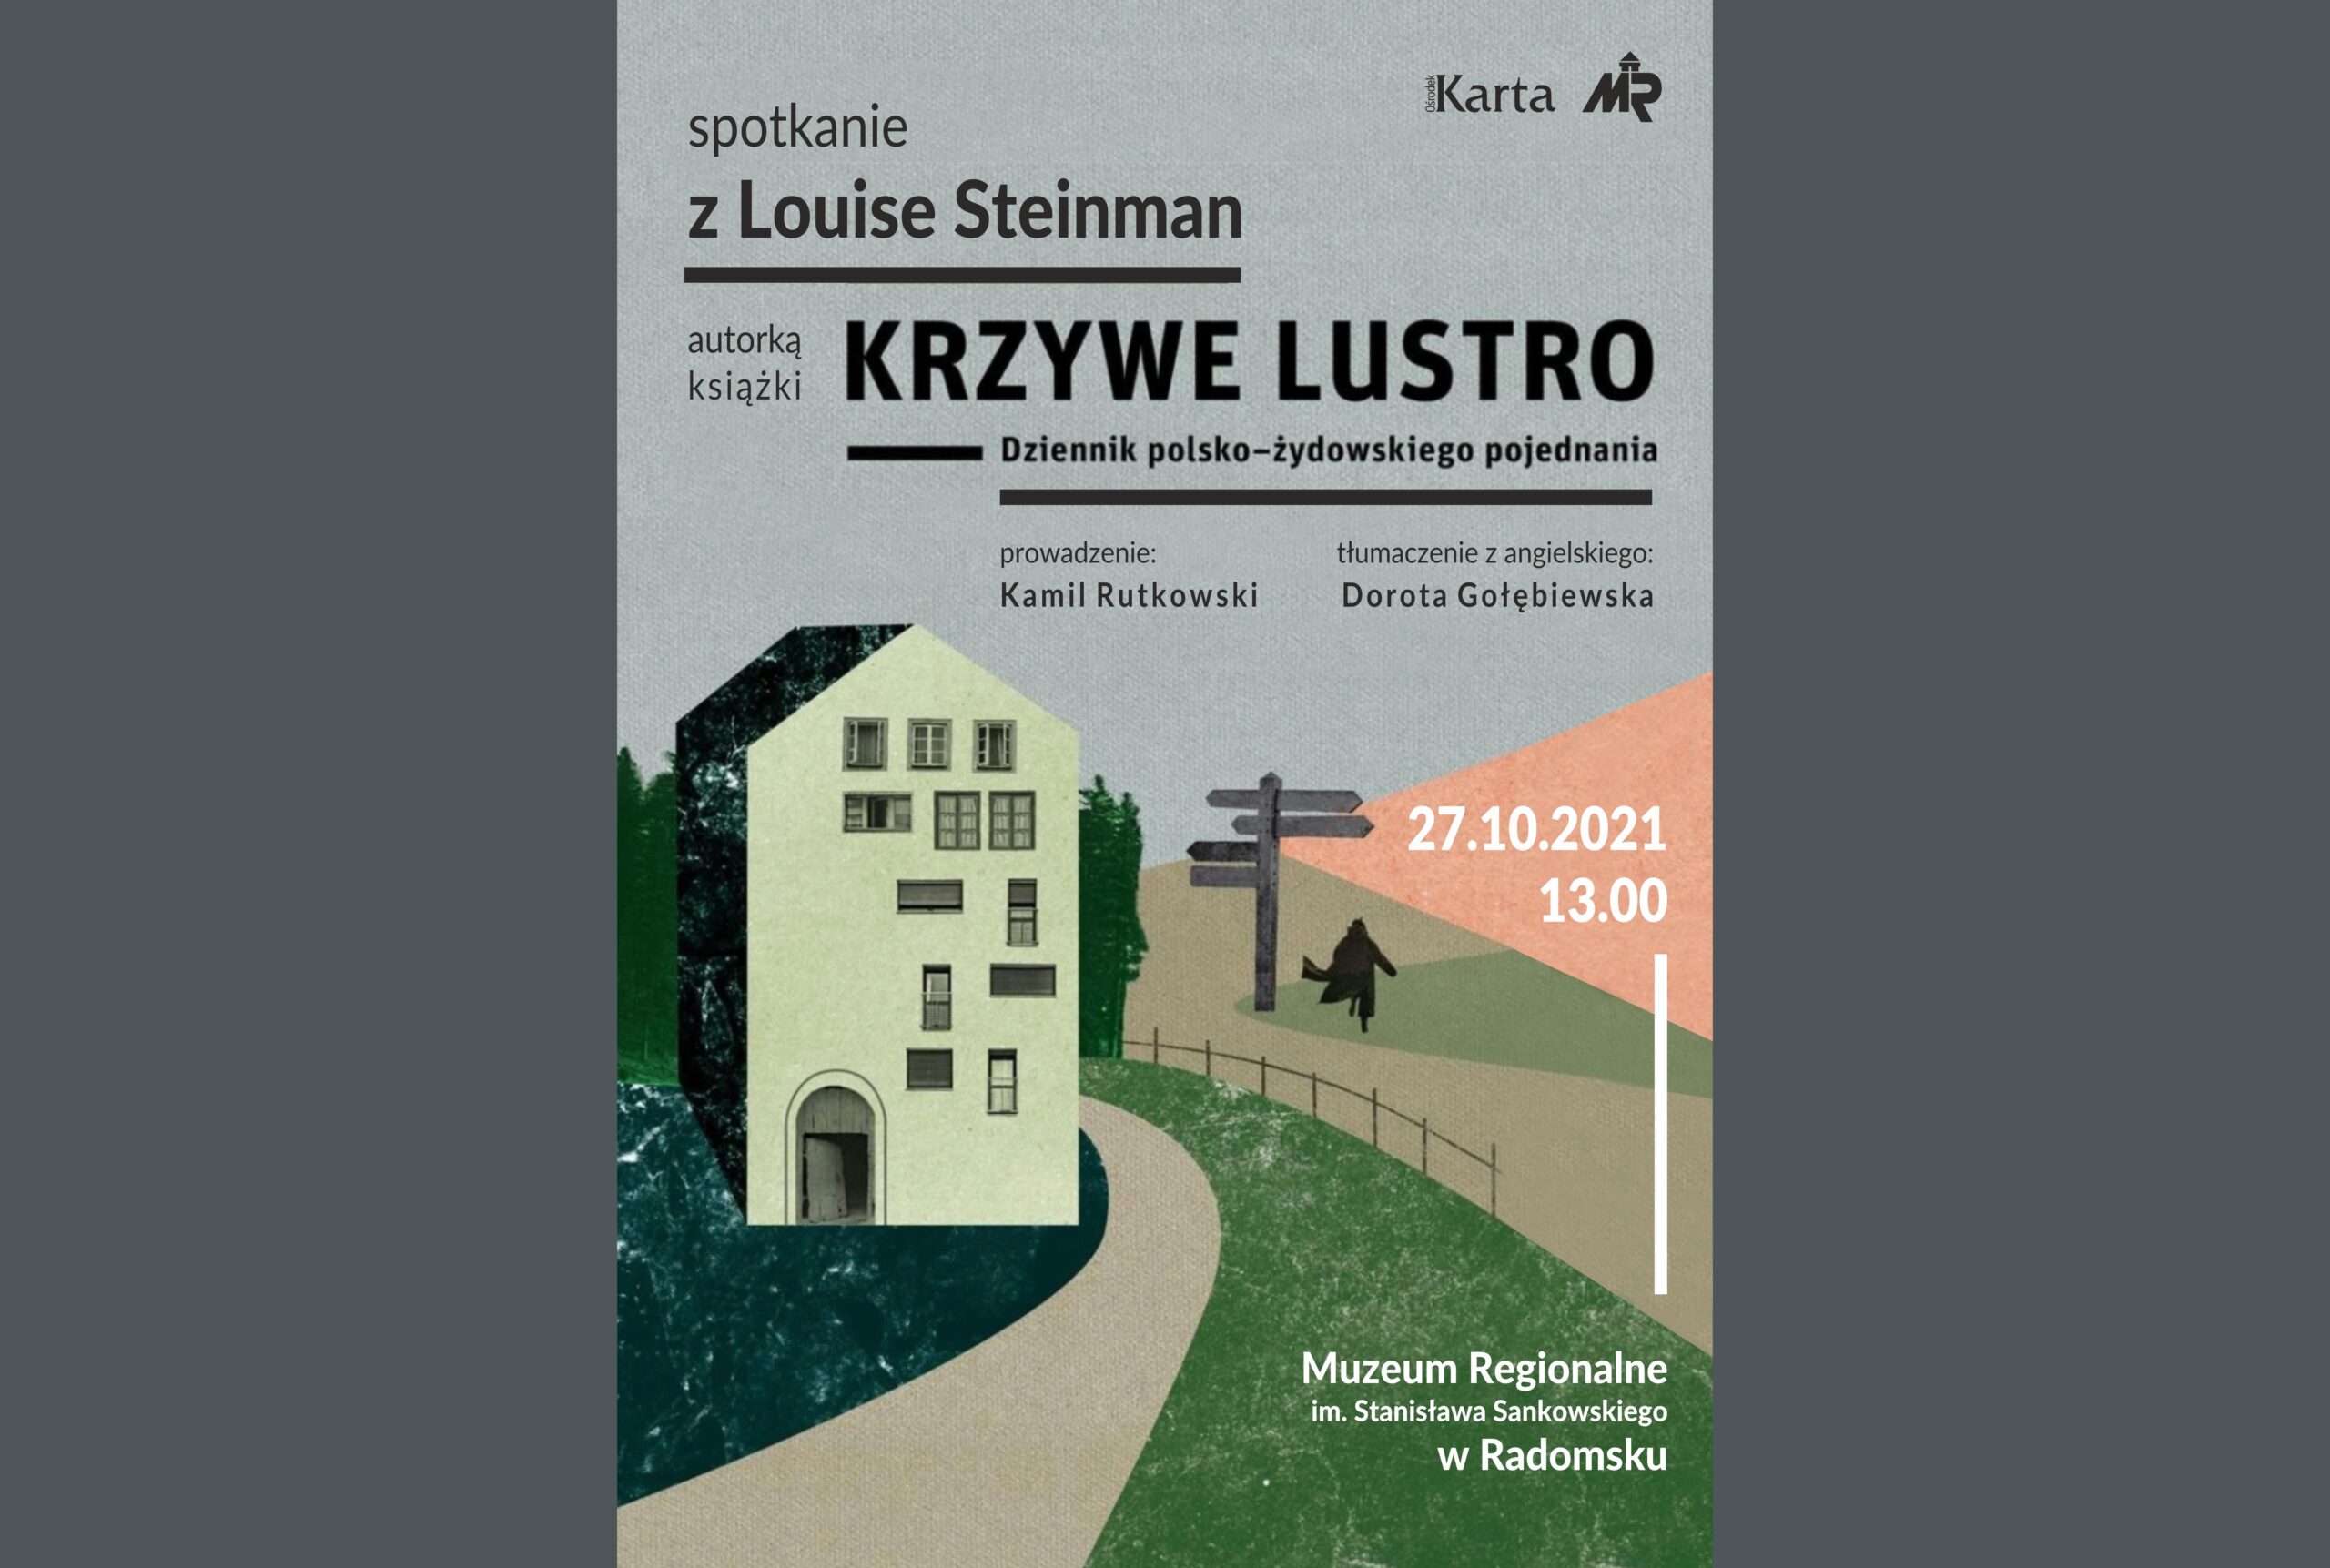 "Krzywe Lustro - Dziennik polsko-żydowskiego pojednania" 5